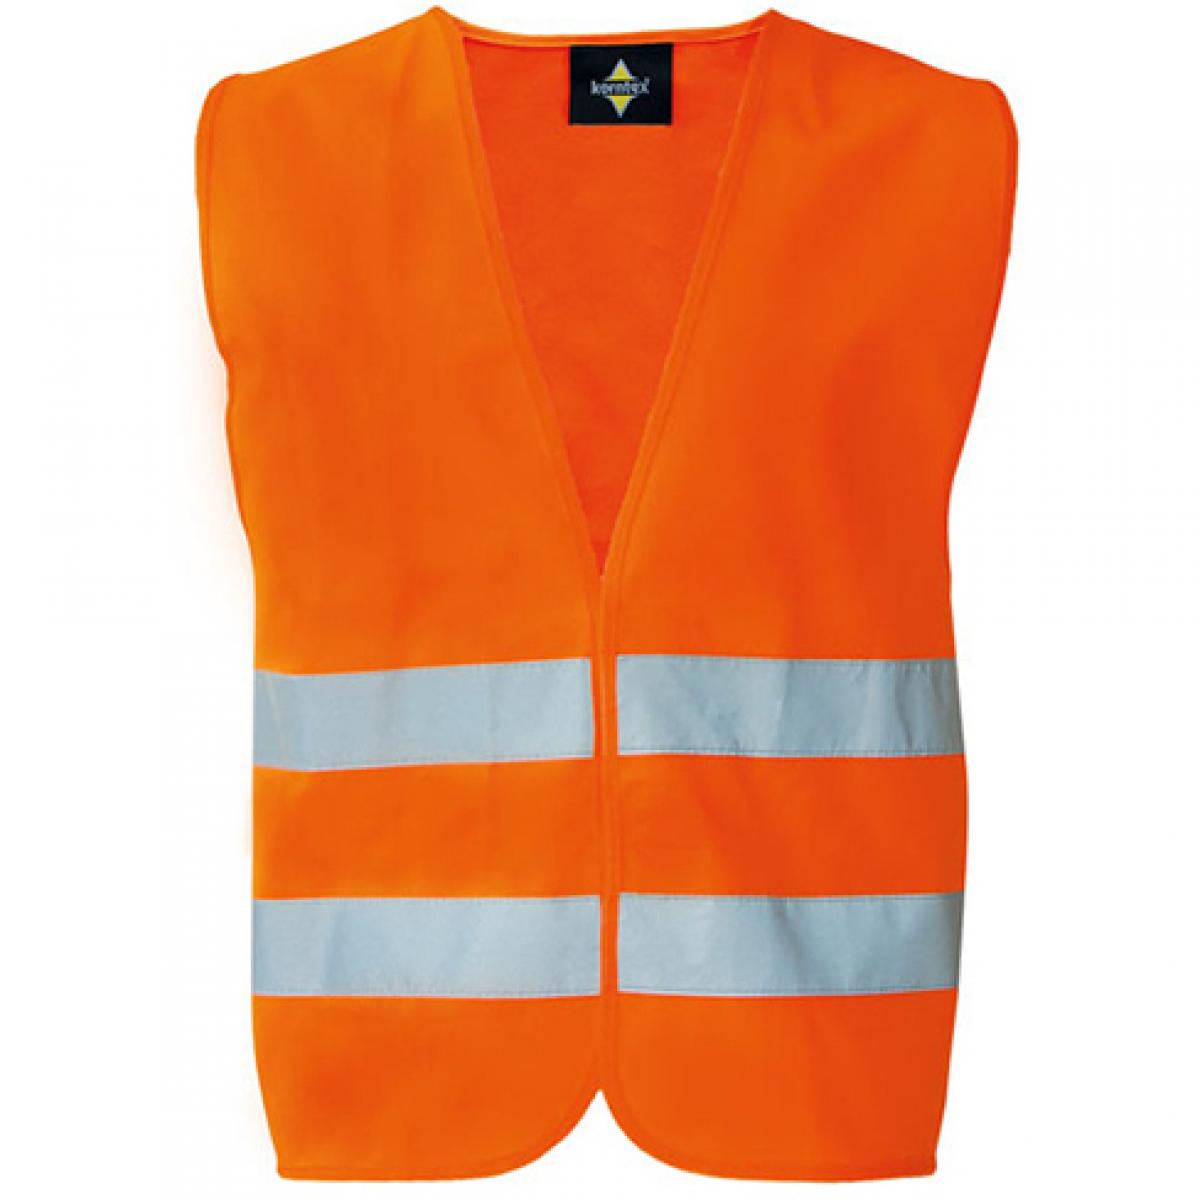 Hersteller: Korntex Herstellernummer: RX217 Artikelbezeichnung: Safety Vest With Zipper Warnweste Farbe: Signal Orange